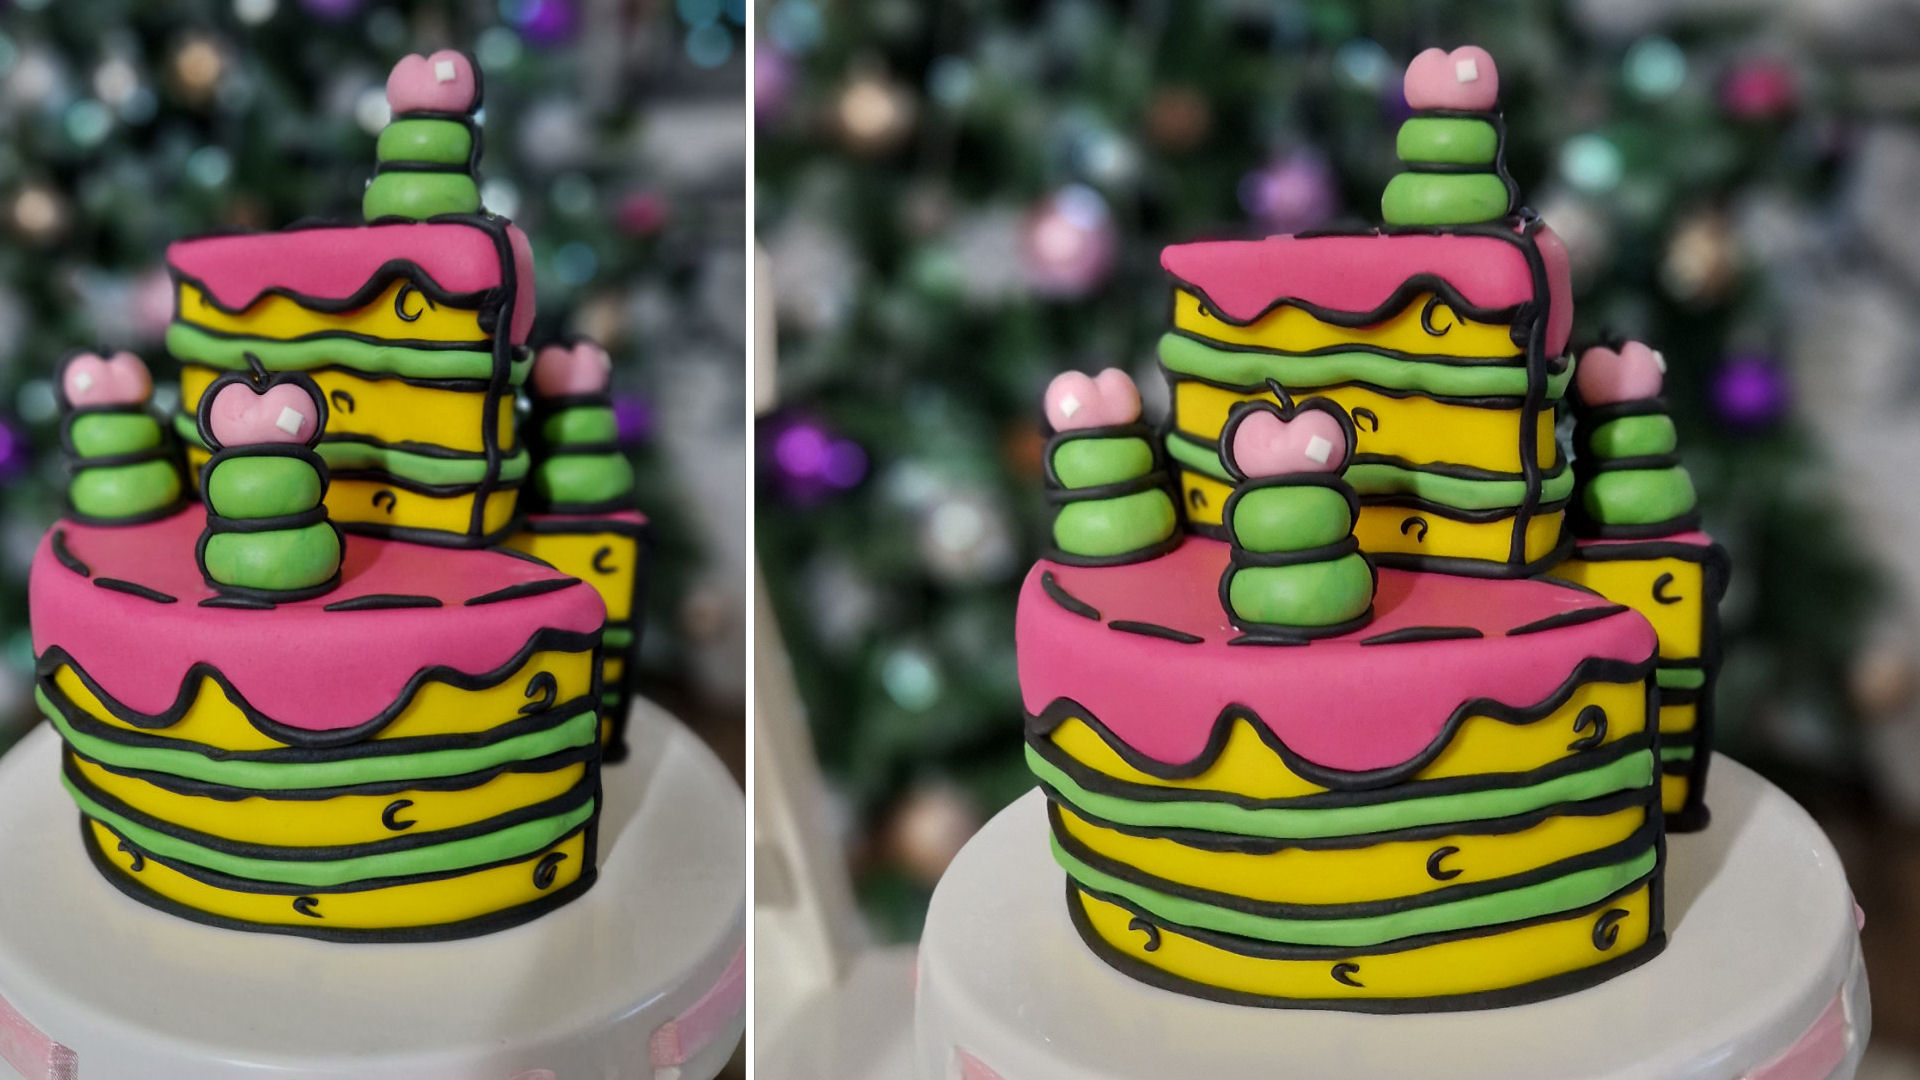 Kako da napravite tortu kao iz crtanog filma / Cartoon cake